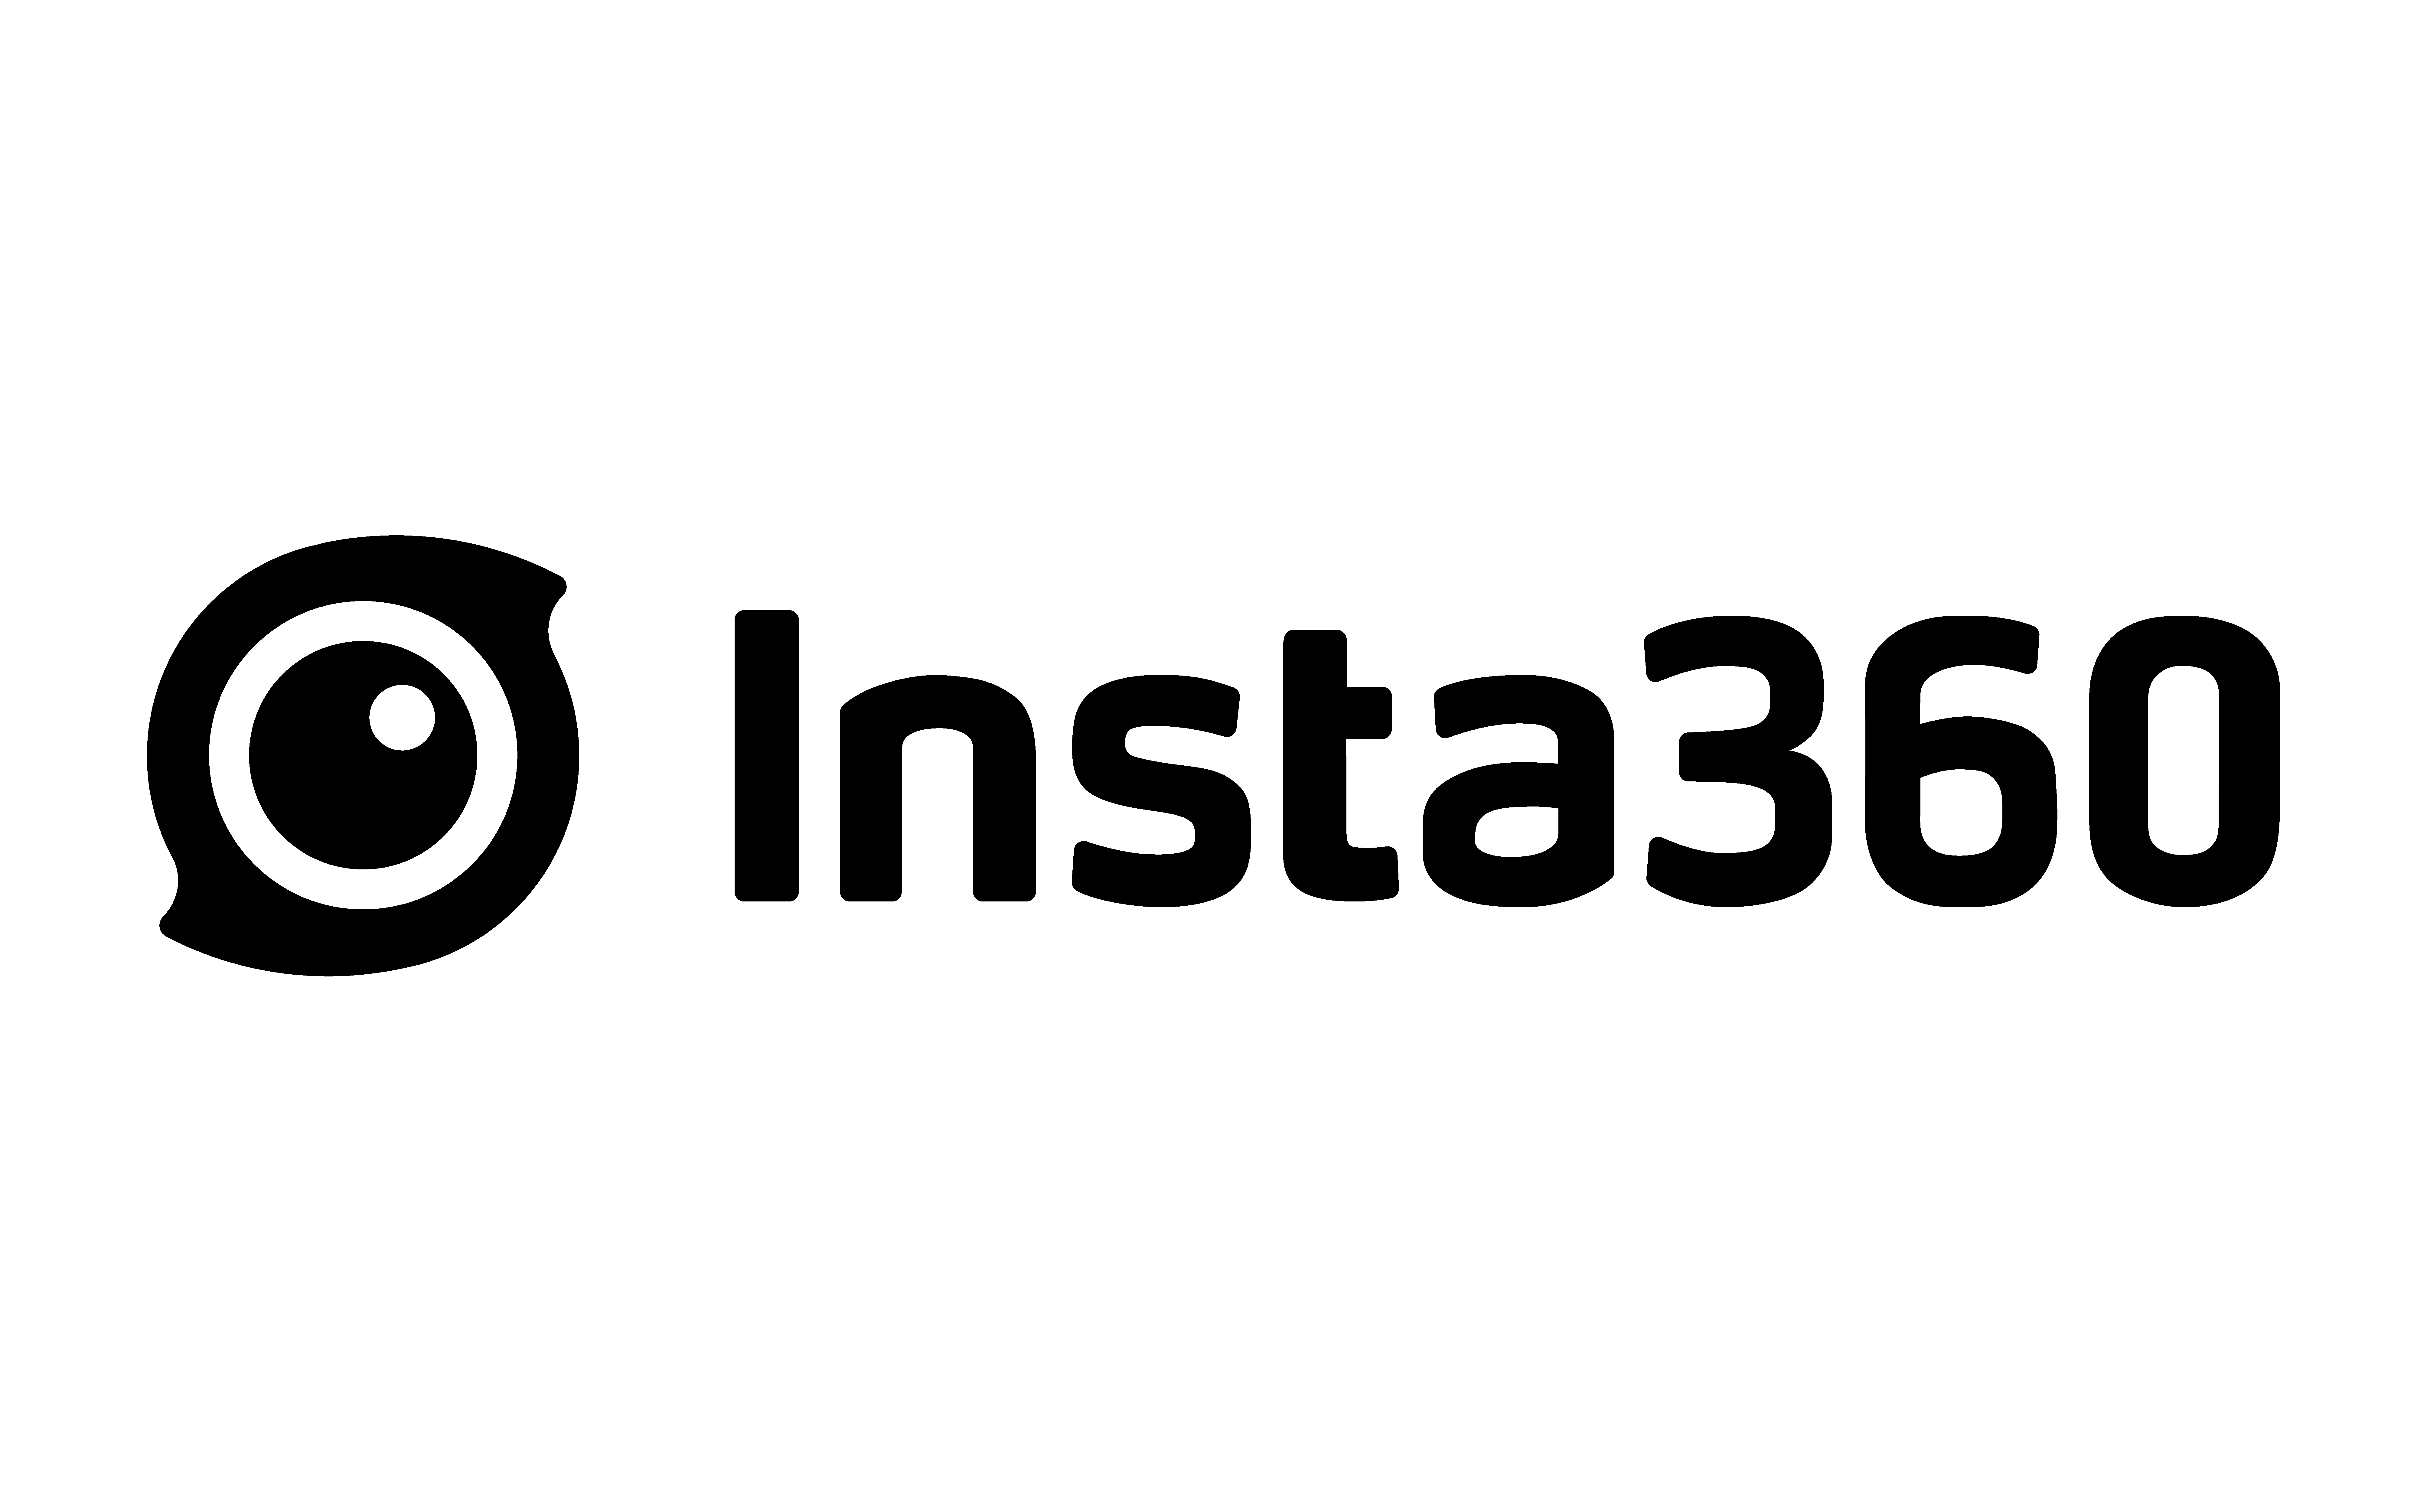 מצלמת אקסטרים Insta360 ONE RS 4K Edition